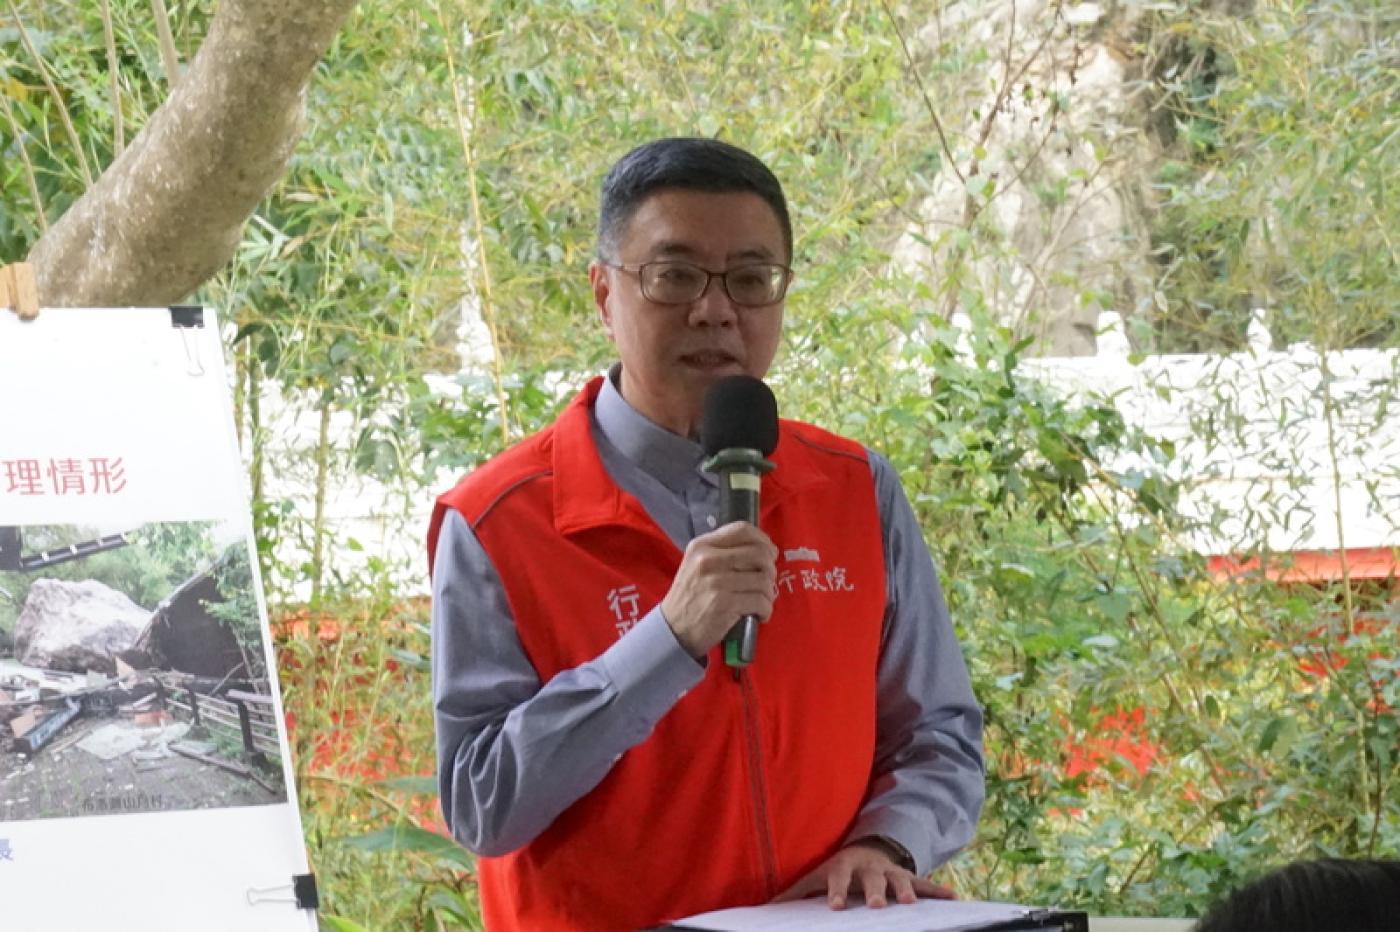 行政院長卓榮泰22日到花蓮視察震災復原狀況，談到台鐵229次列車撞土石流事故，他致歉表示努力得不夠快。中央社